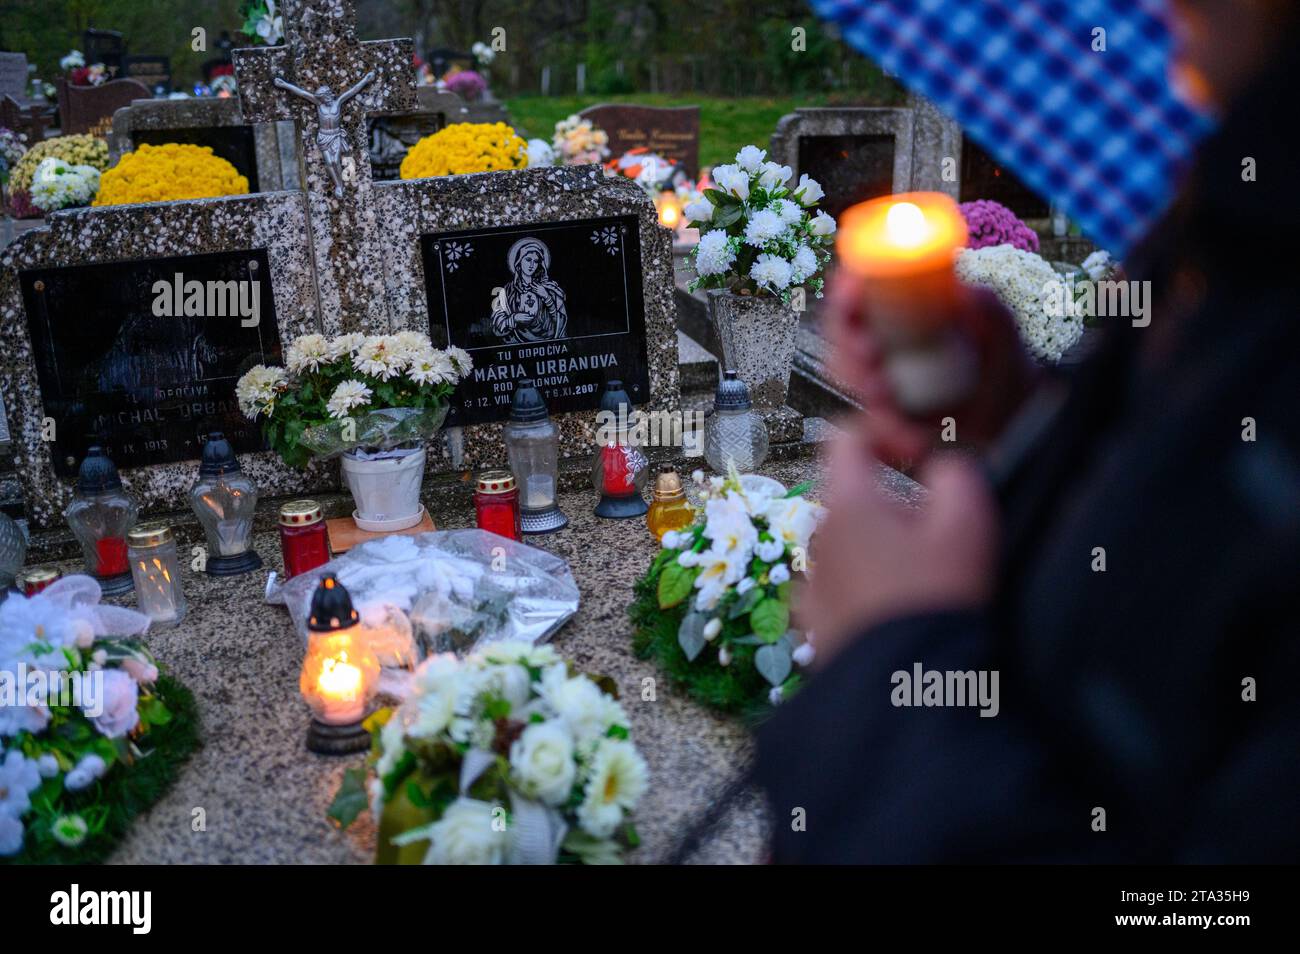 Die Gläubigen legen Blumen und Kerzen und beten für die Verstorbenen auf ihrem Grab. Stockfoto